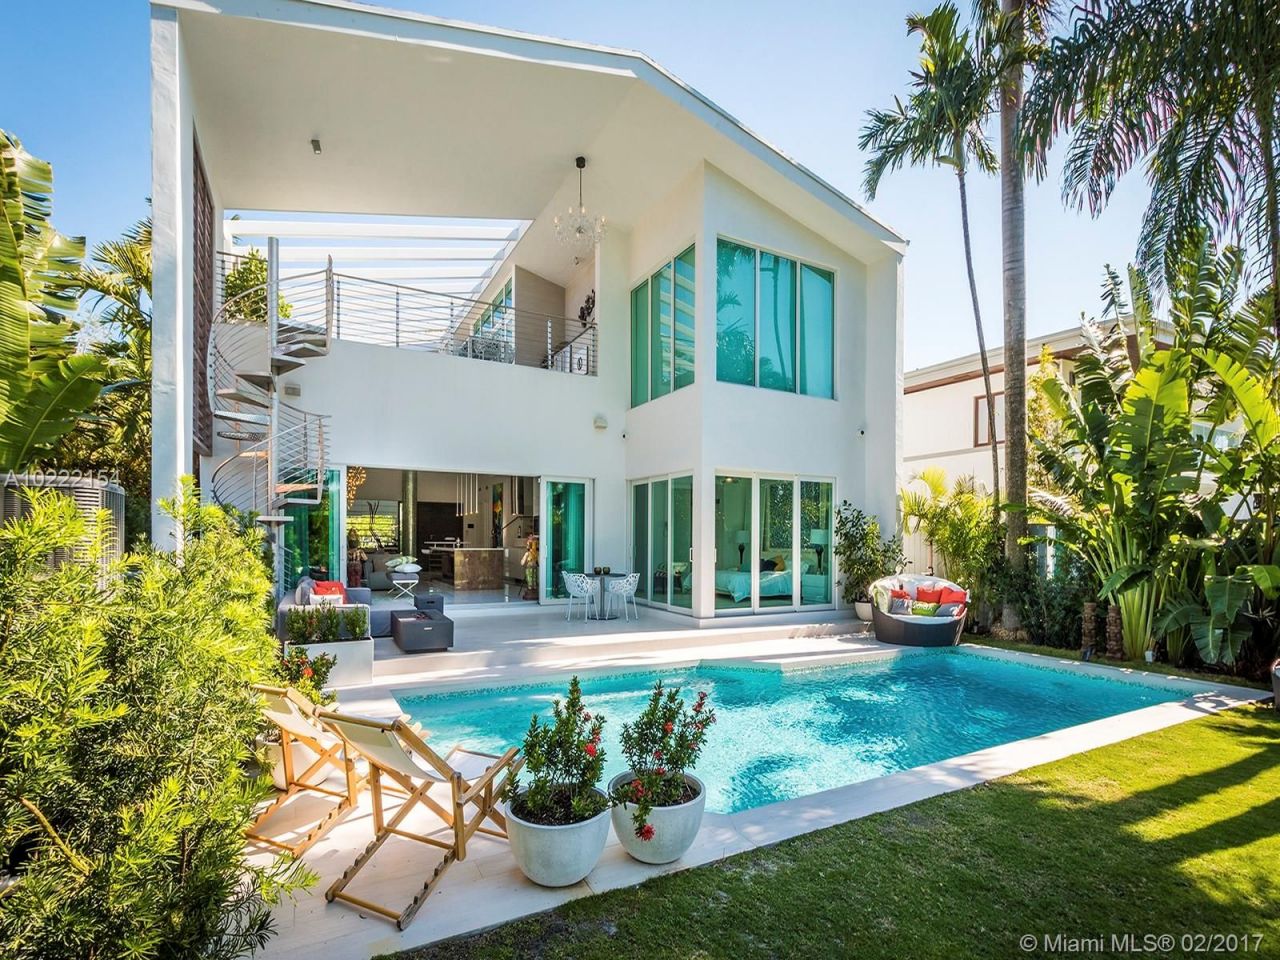 Villa in Miami, USA, 310 sq.m - picture 1